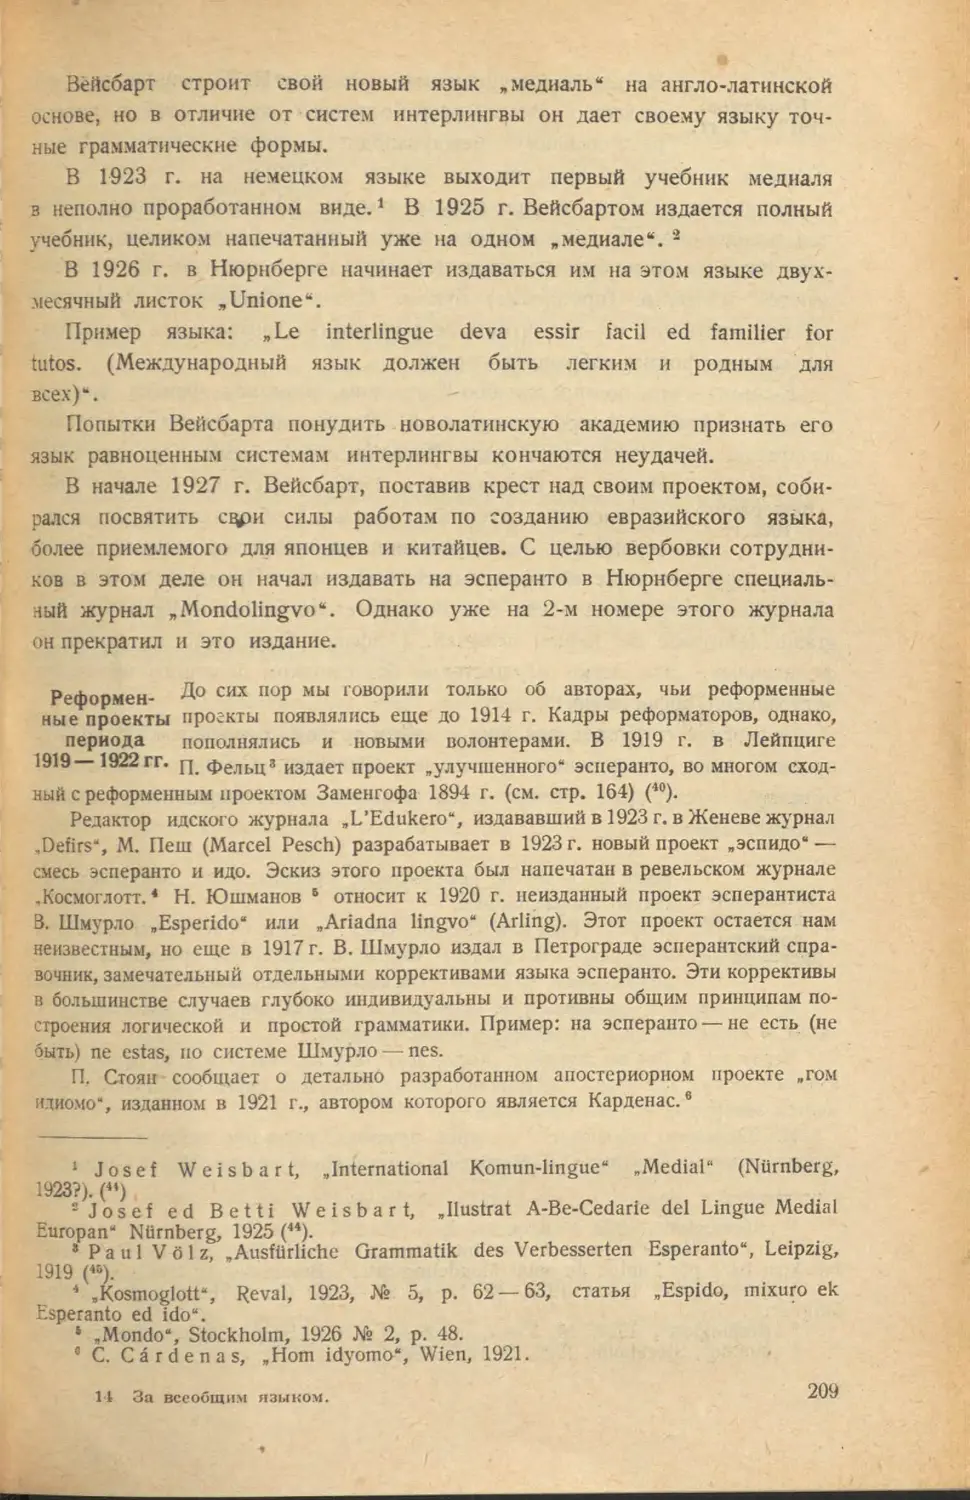 Реформенные проекты периода 1919-1922 гг